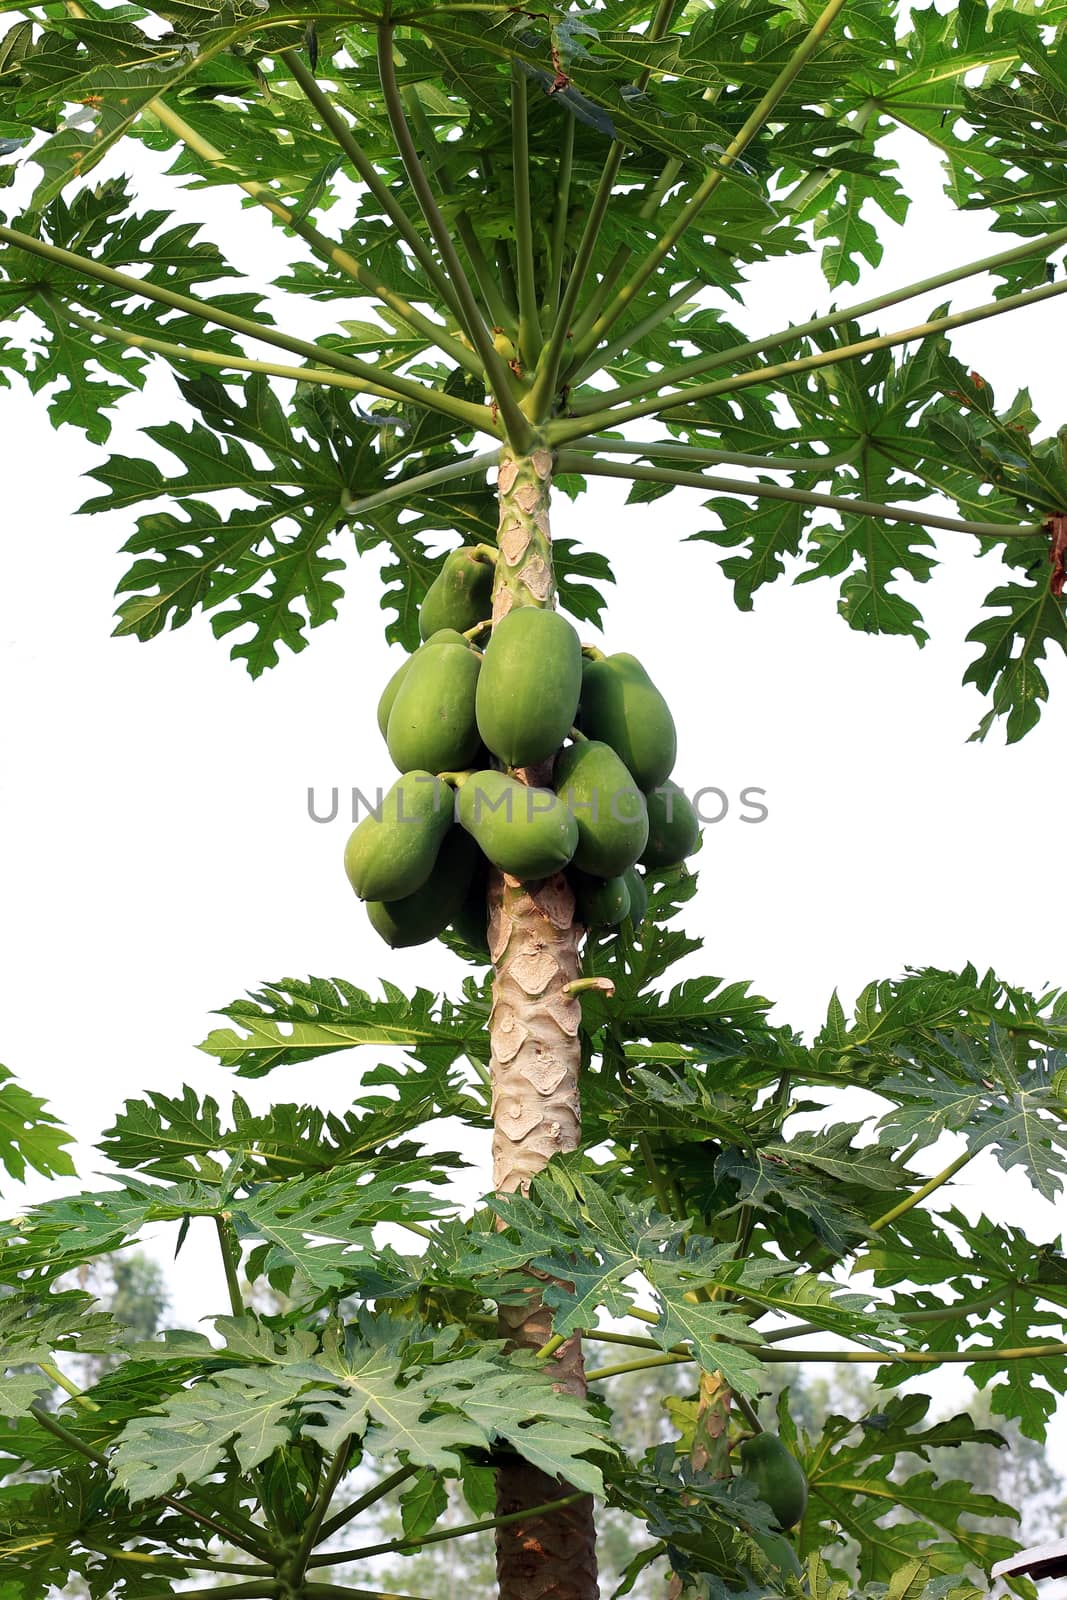 papaya on tree and papaya farm by cgdeaw